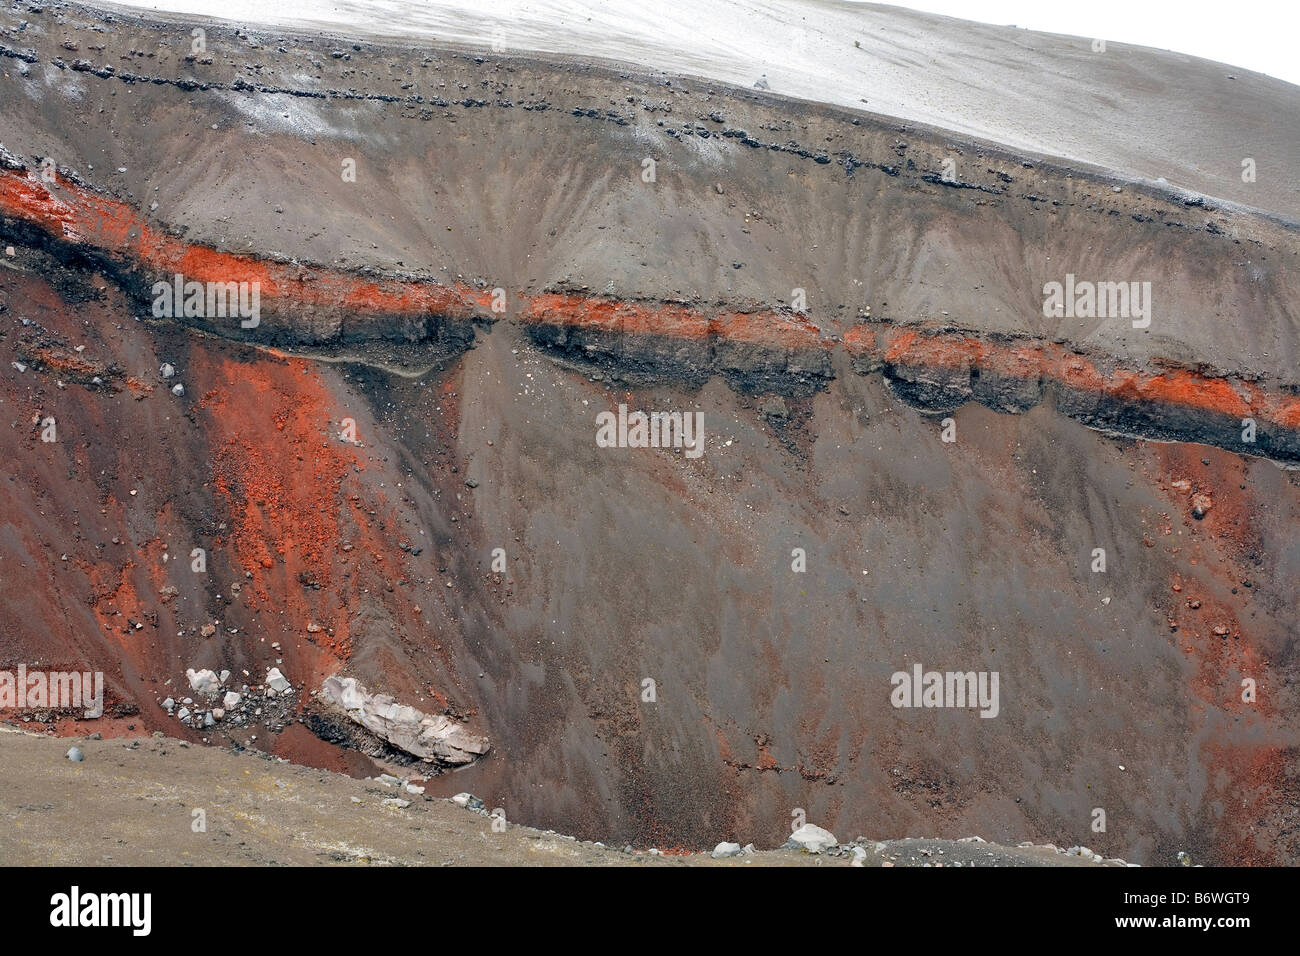 Rojo estratos volcánicos en las laderas del volcán Cotopaxi, Ecuador Foto de stock